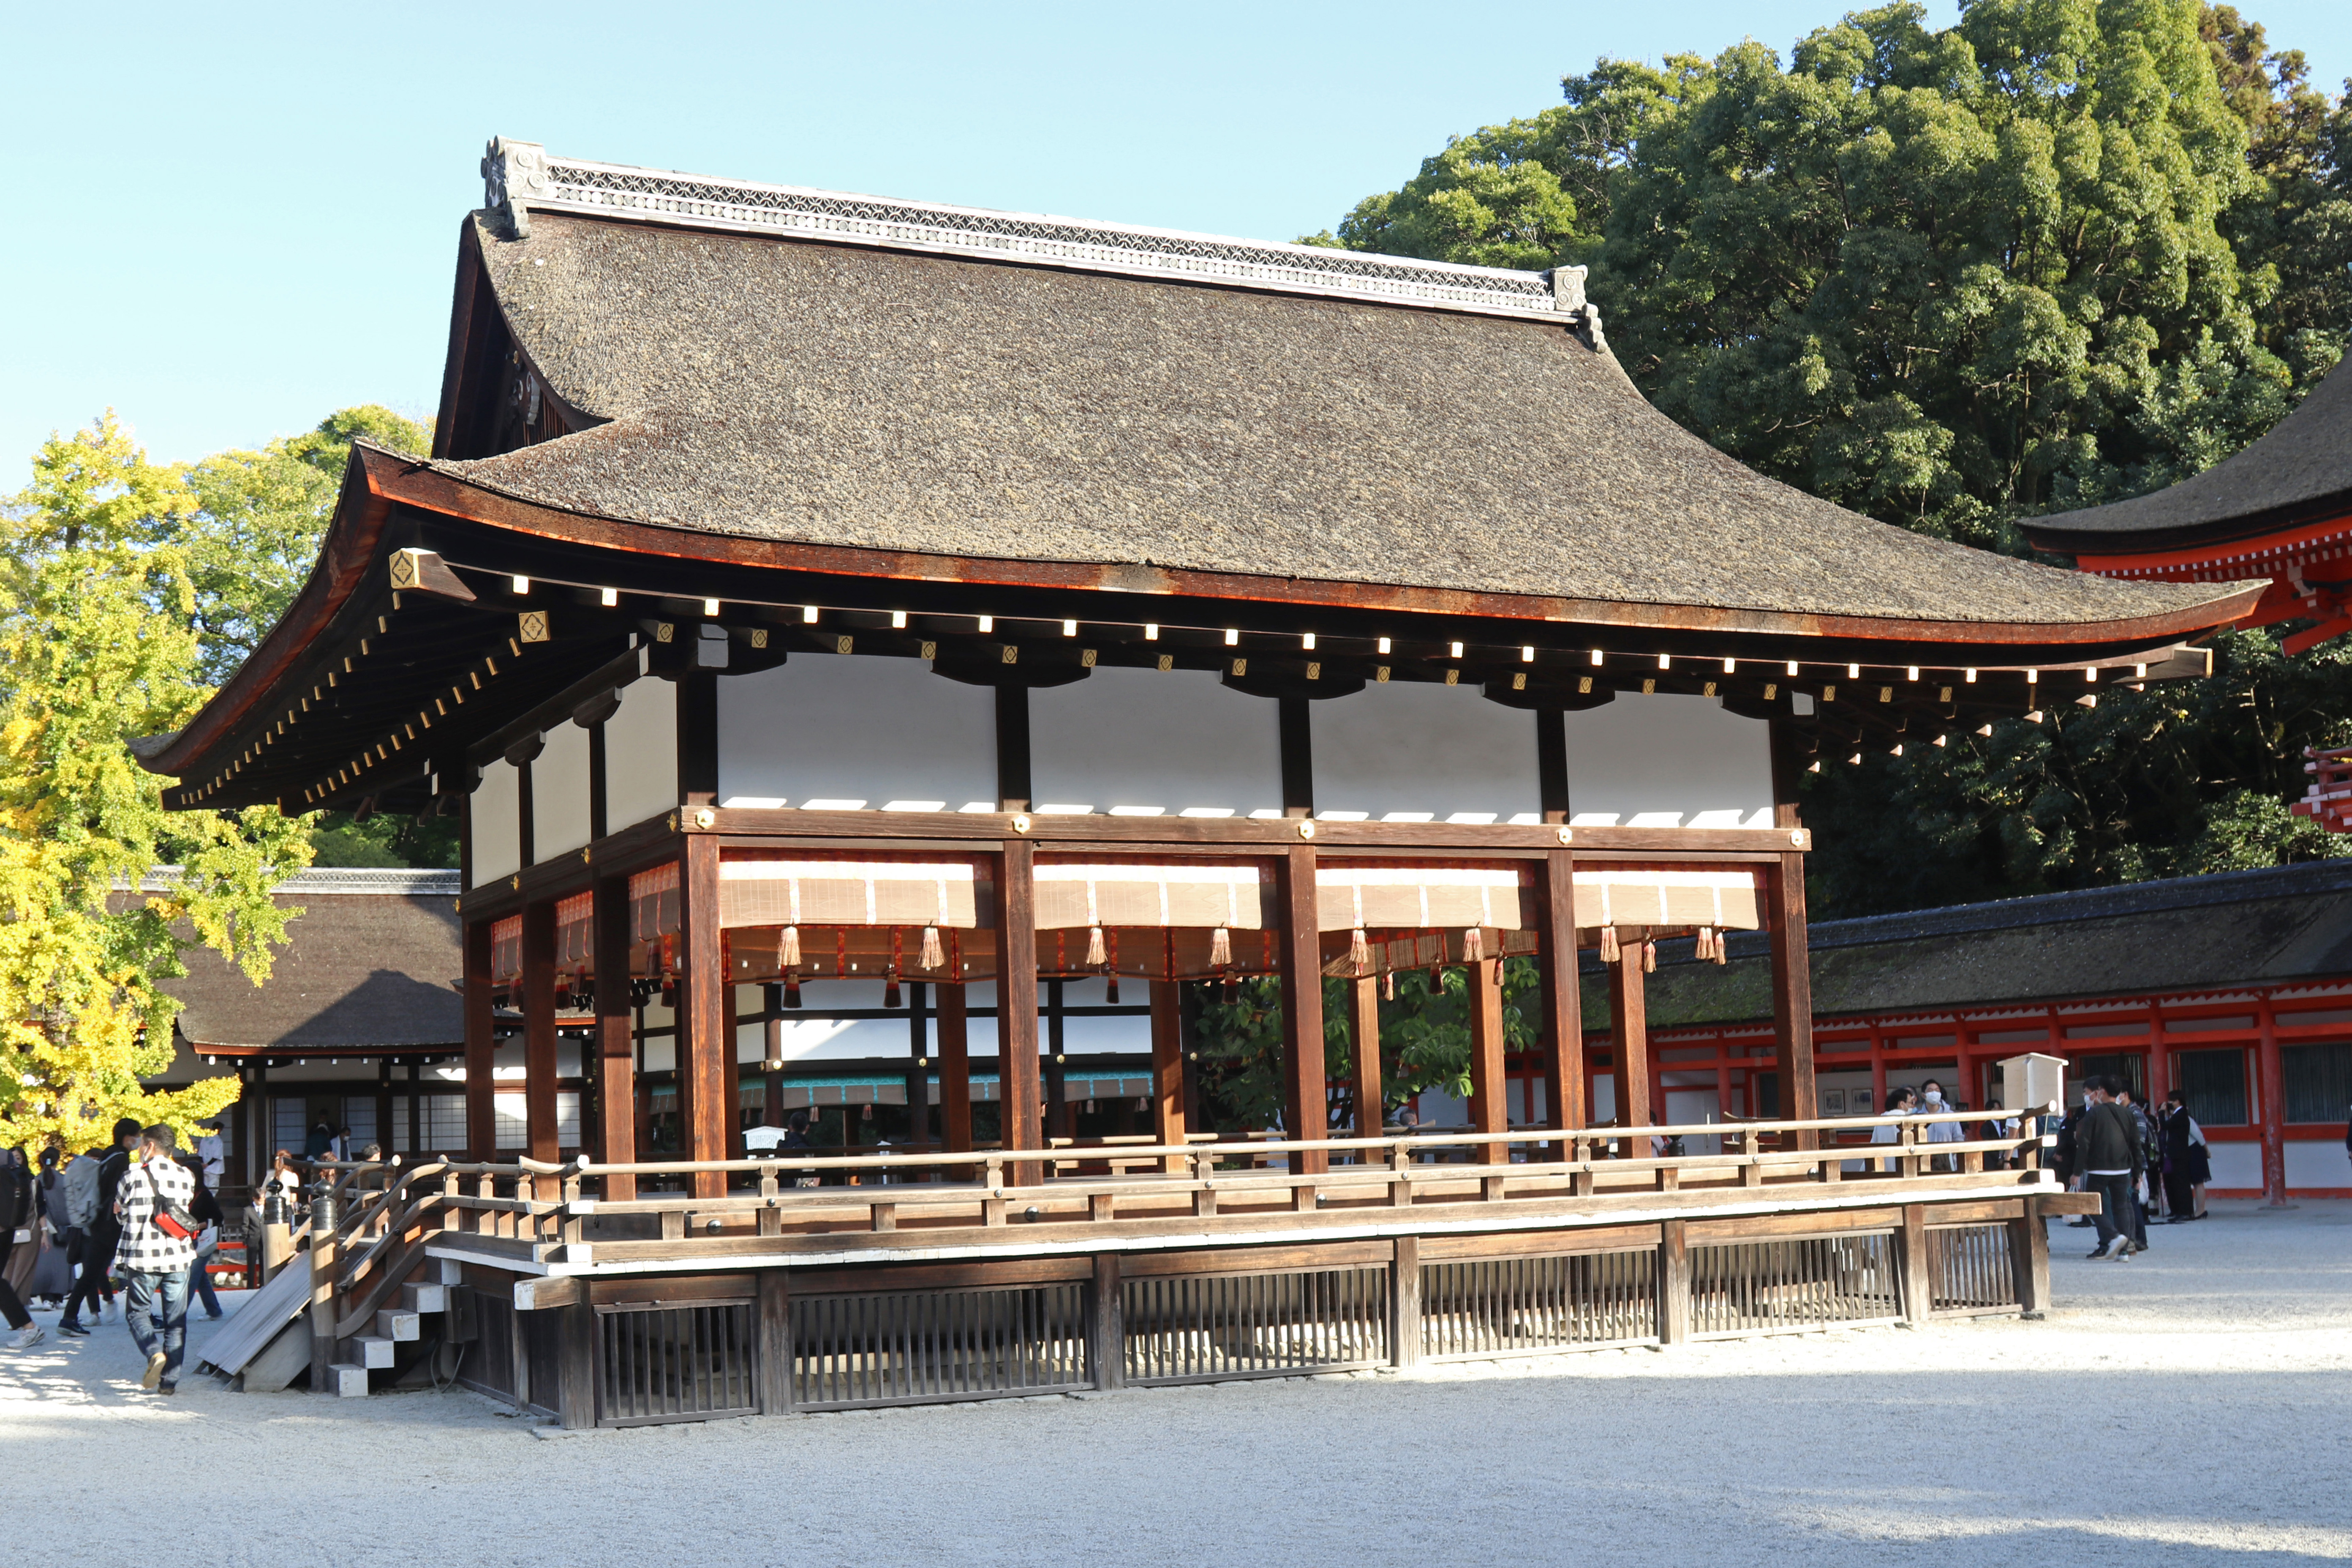 The Kamo shrines